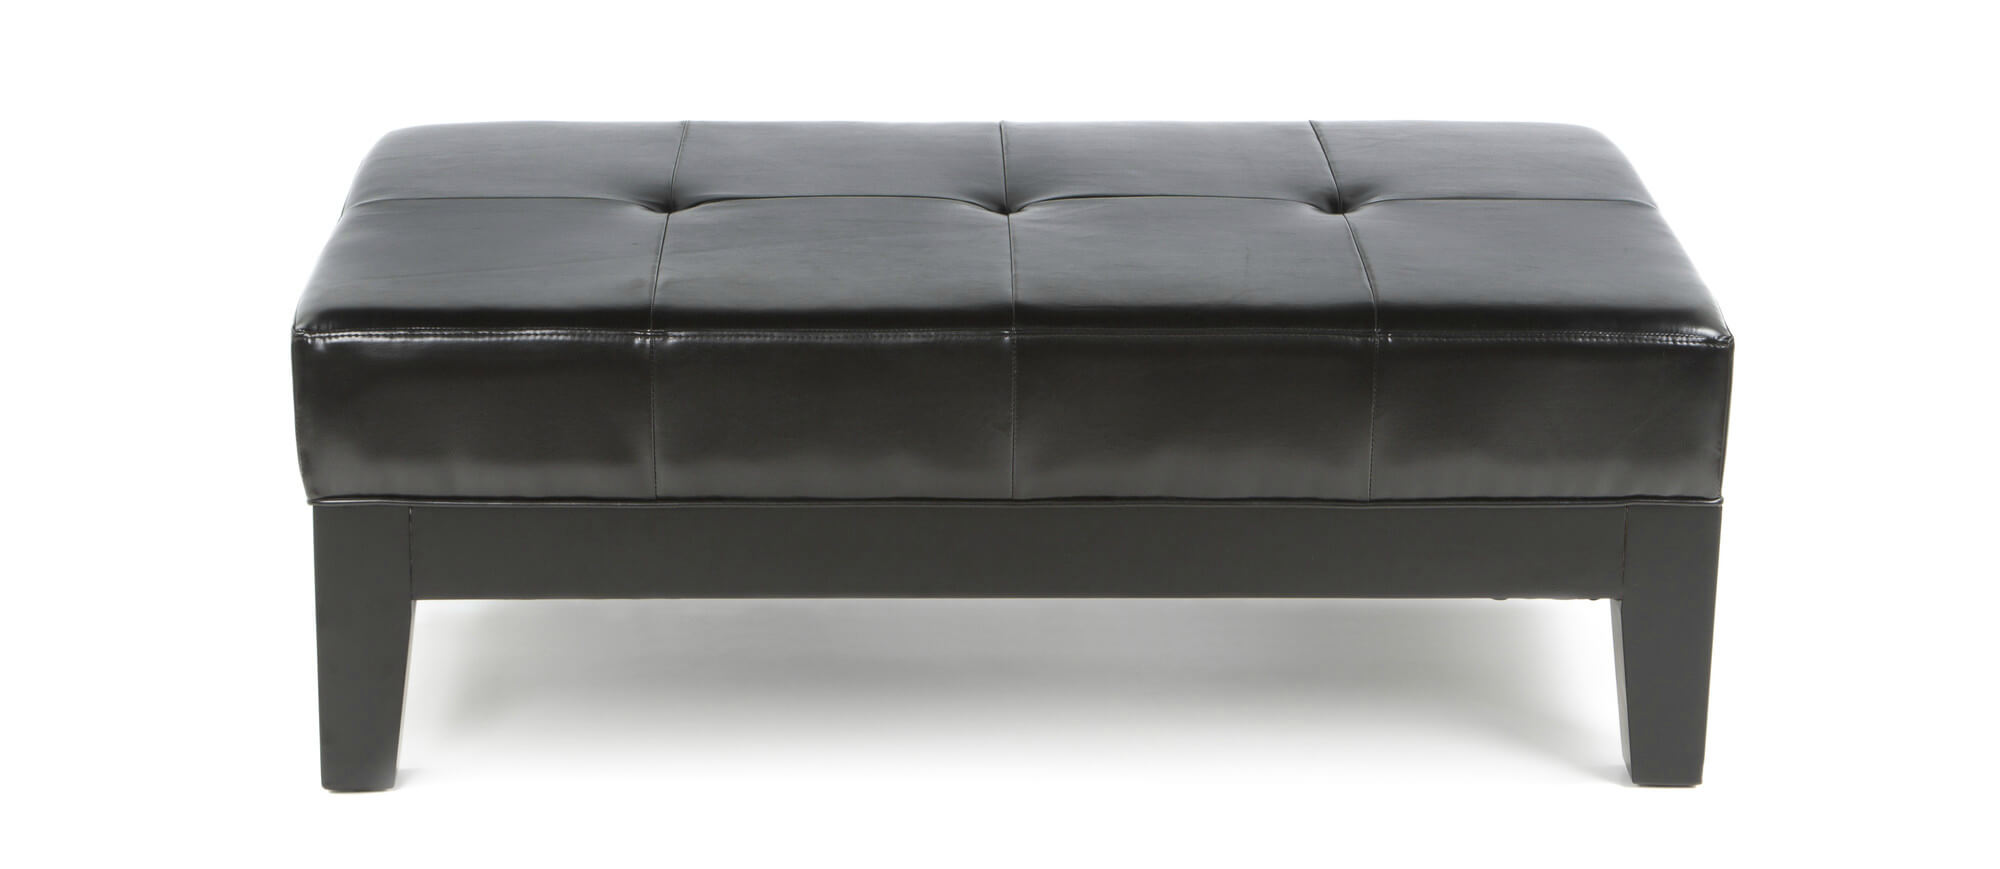 批发内饰的这款深色皮革座椅凳凳的特点是在深色染色的木制框架上有一个宽阔的纽扣簇绒垫子，上面有橡胶脚。